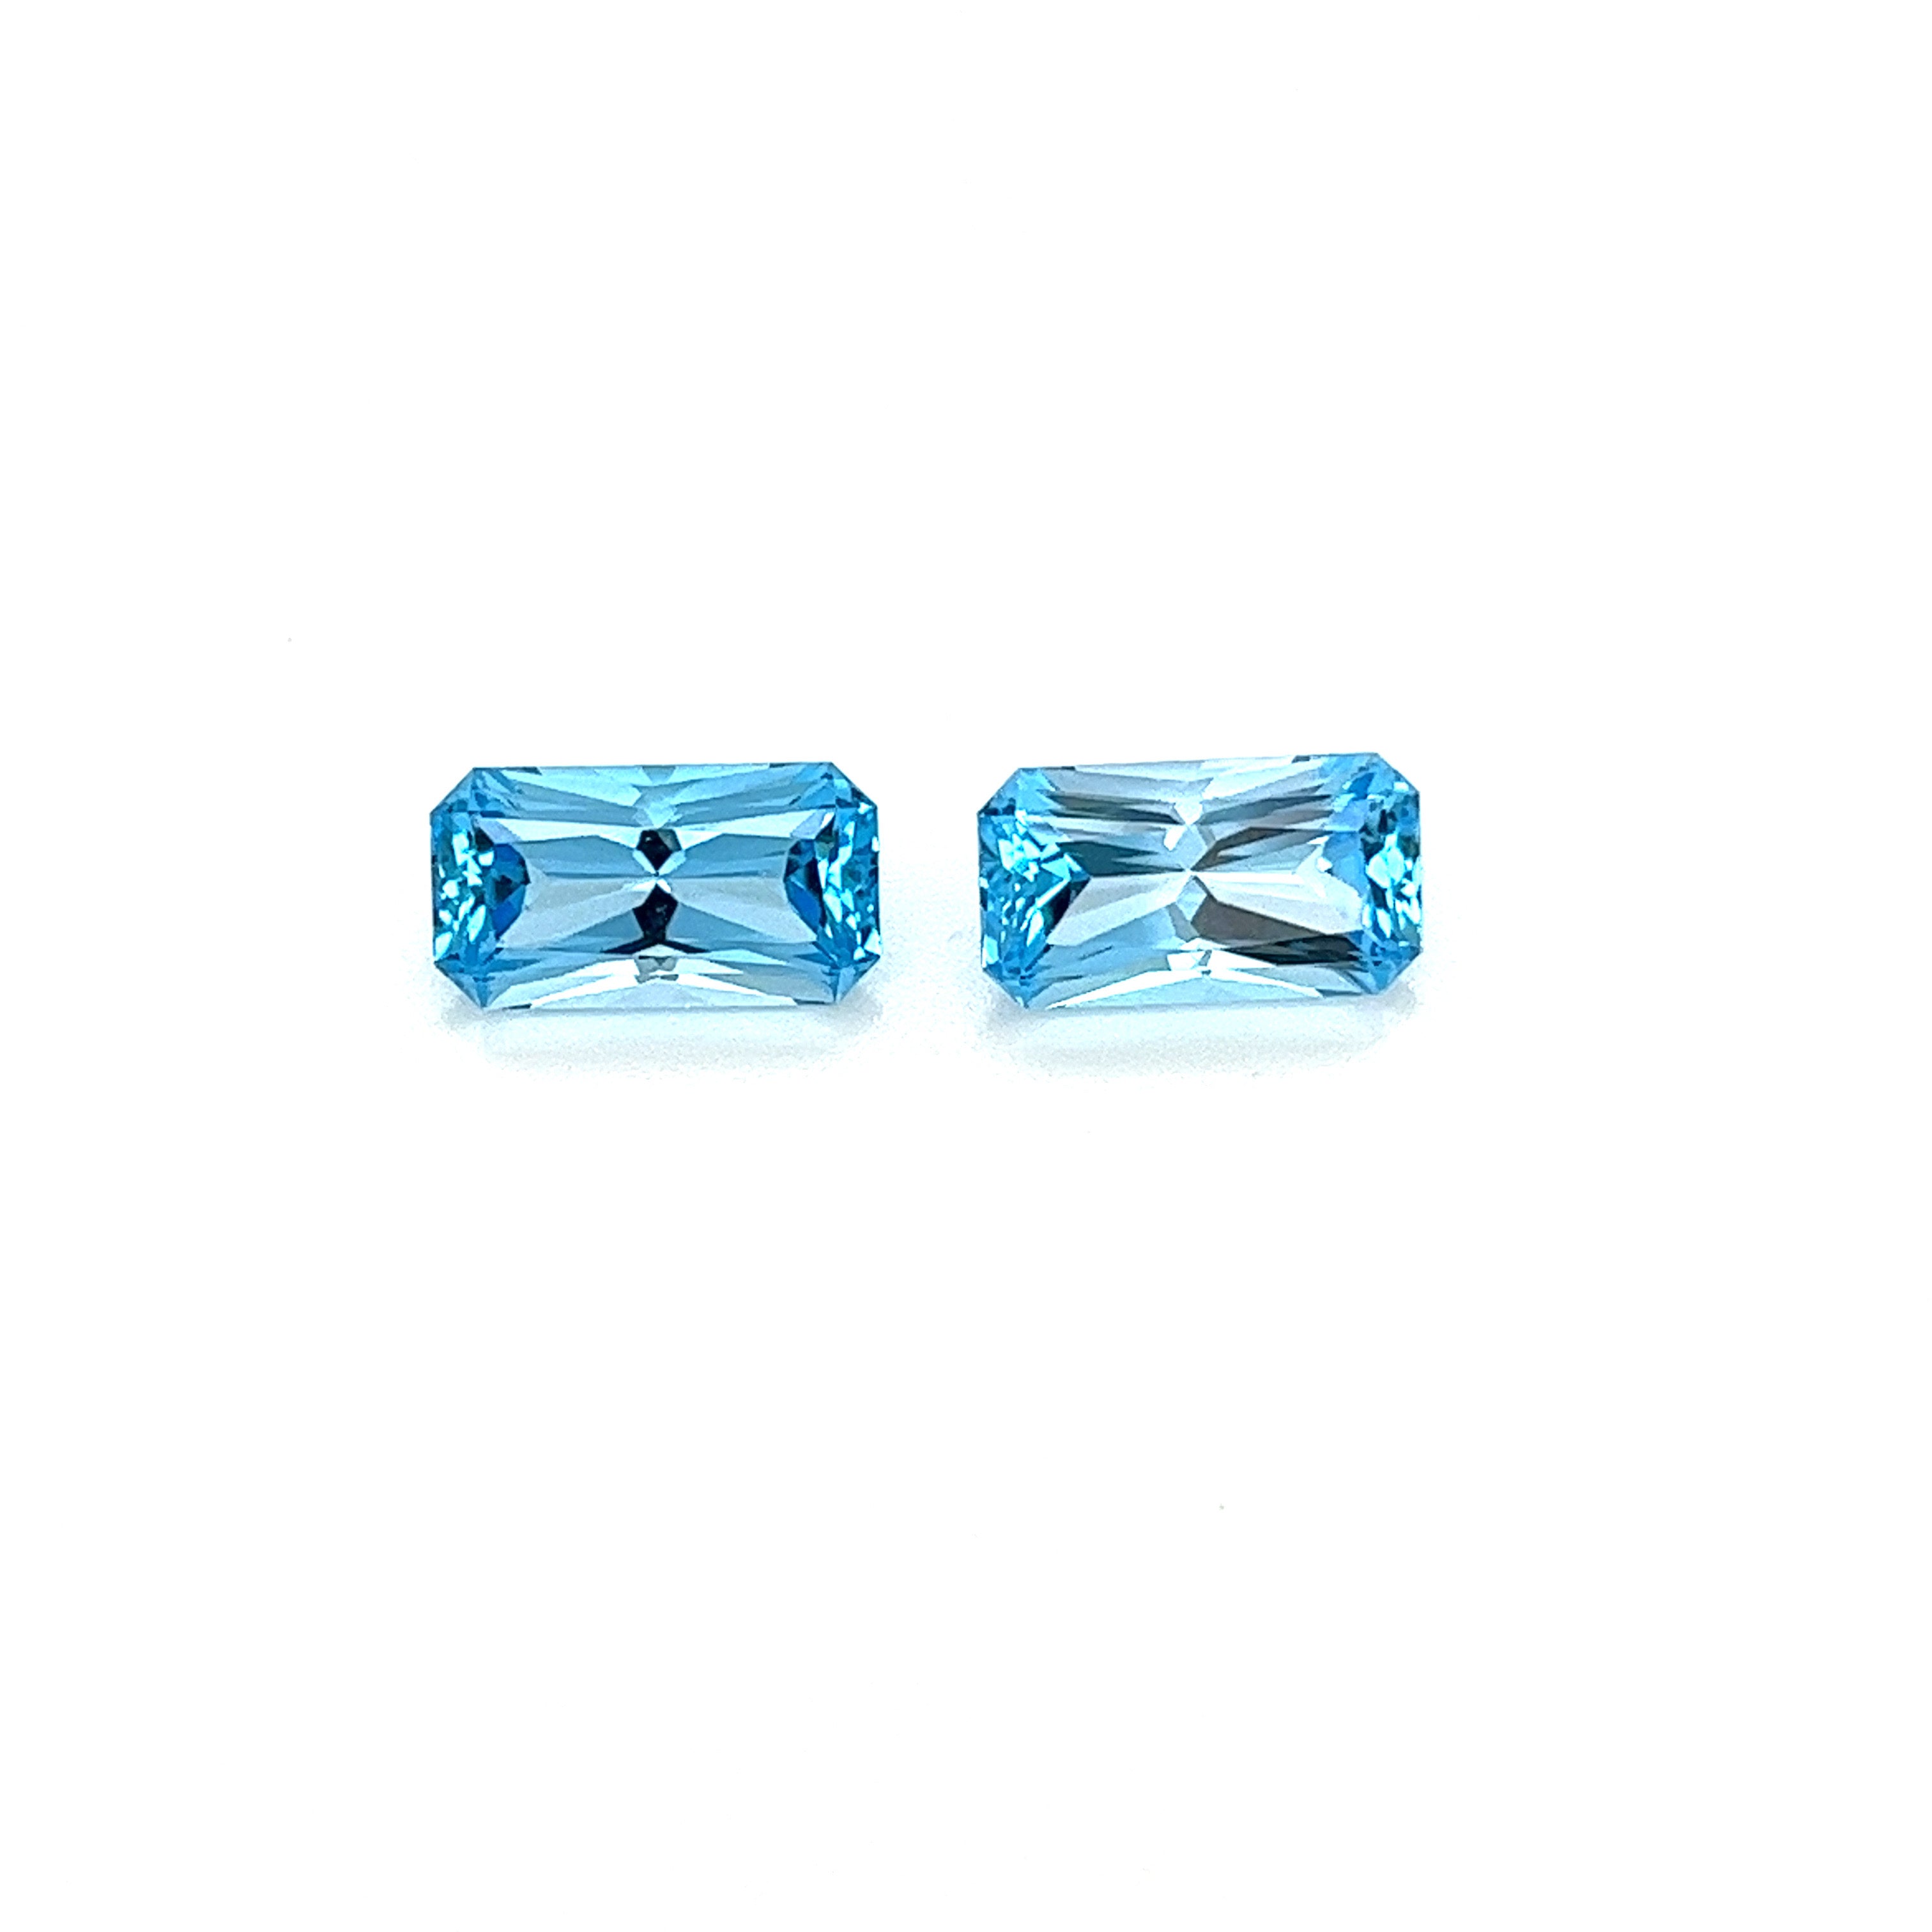 Blue Topaz Gemstones; Natural Brazil Topaz, 5.880cts - Mark Oliver Gems